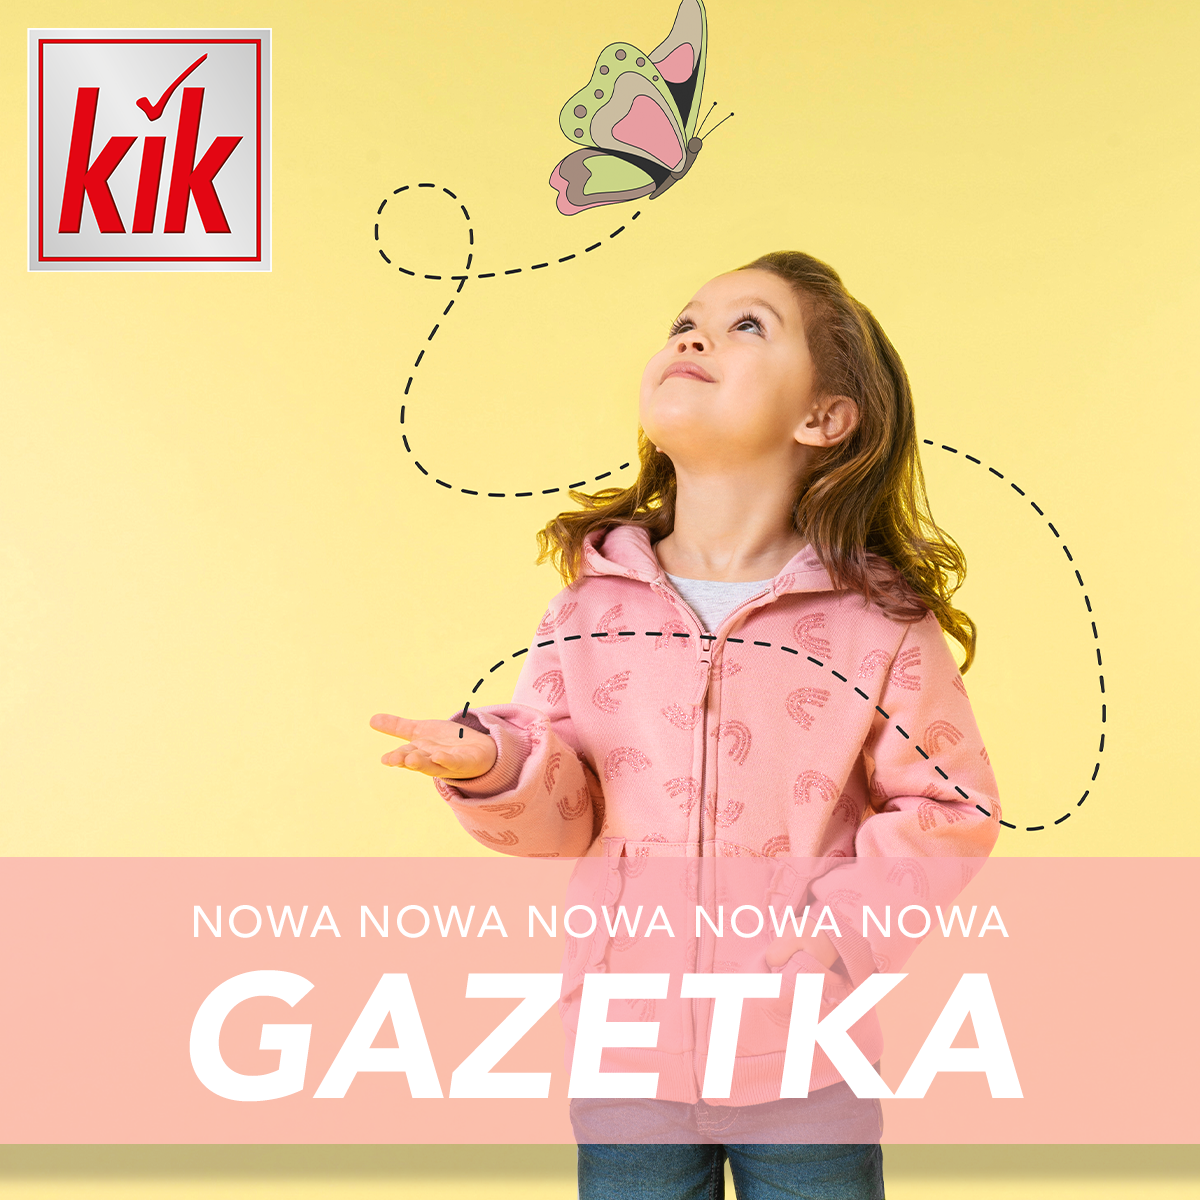 Gazetka Kik, Nowa gazetka KiK!🎉